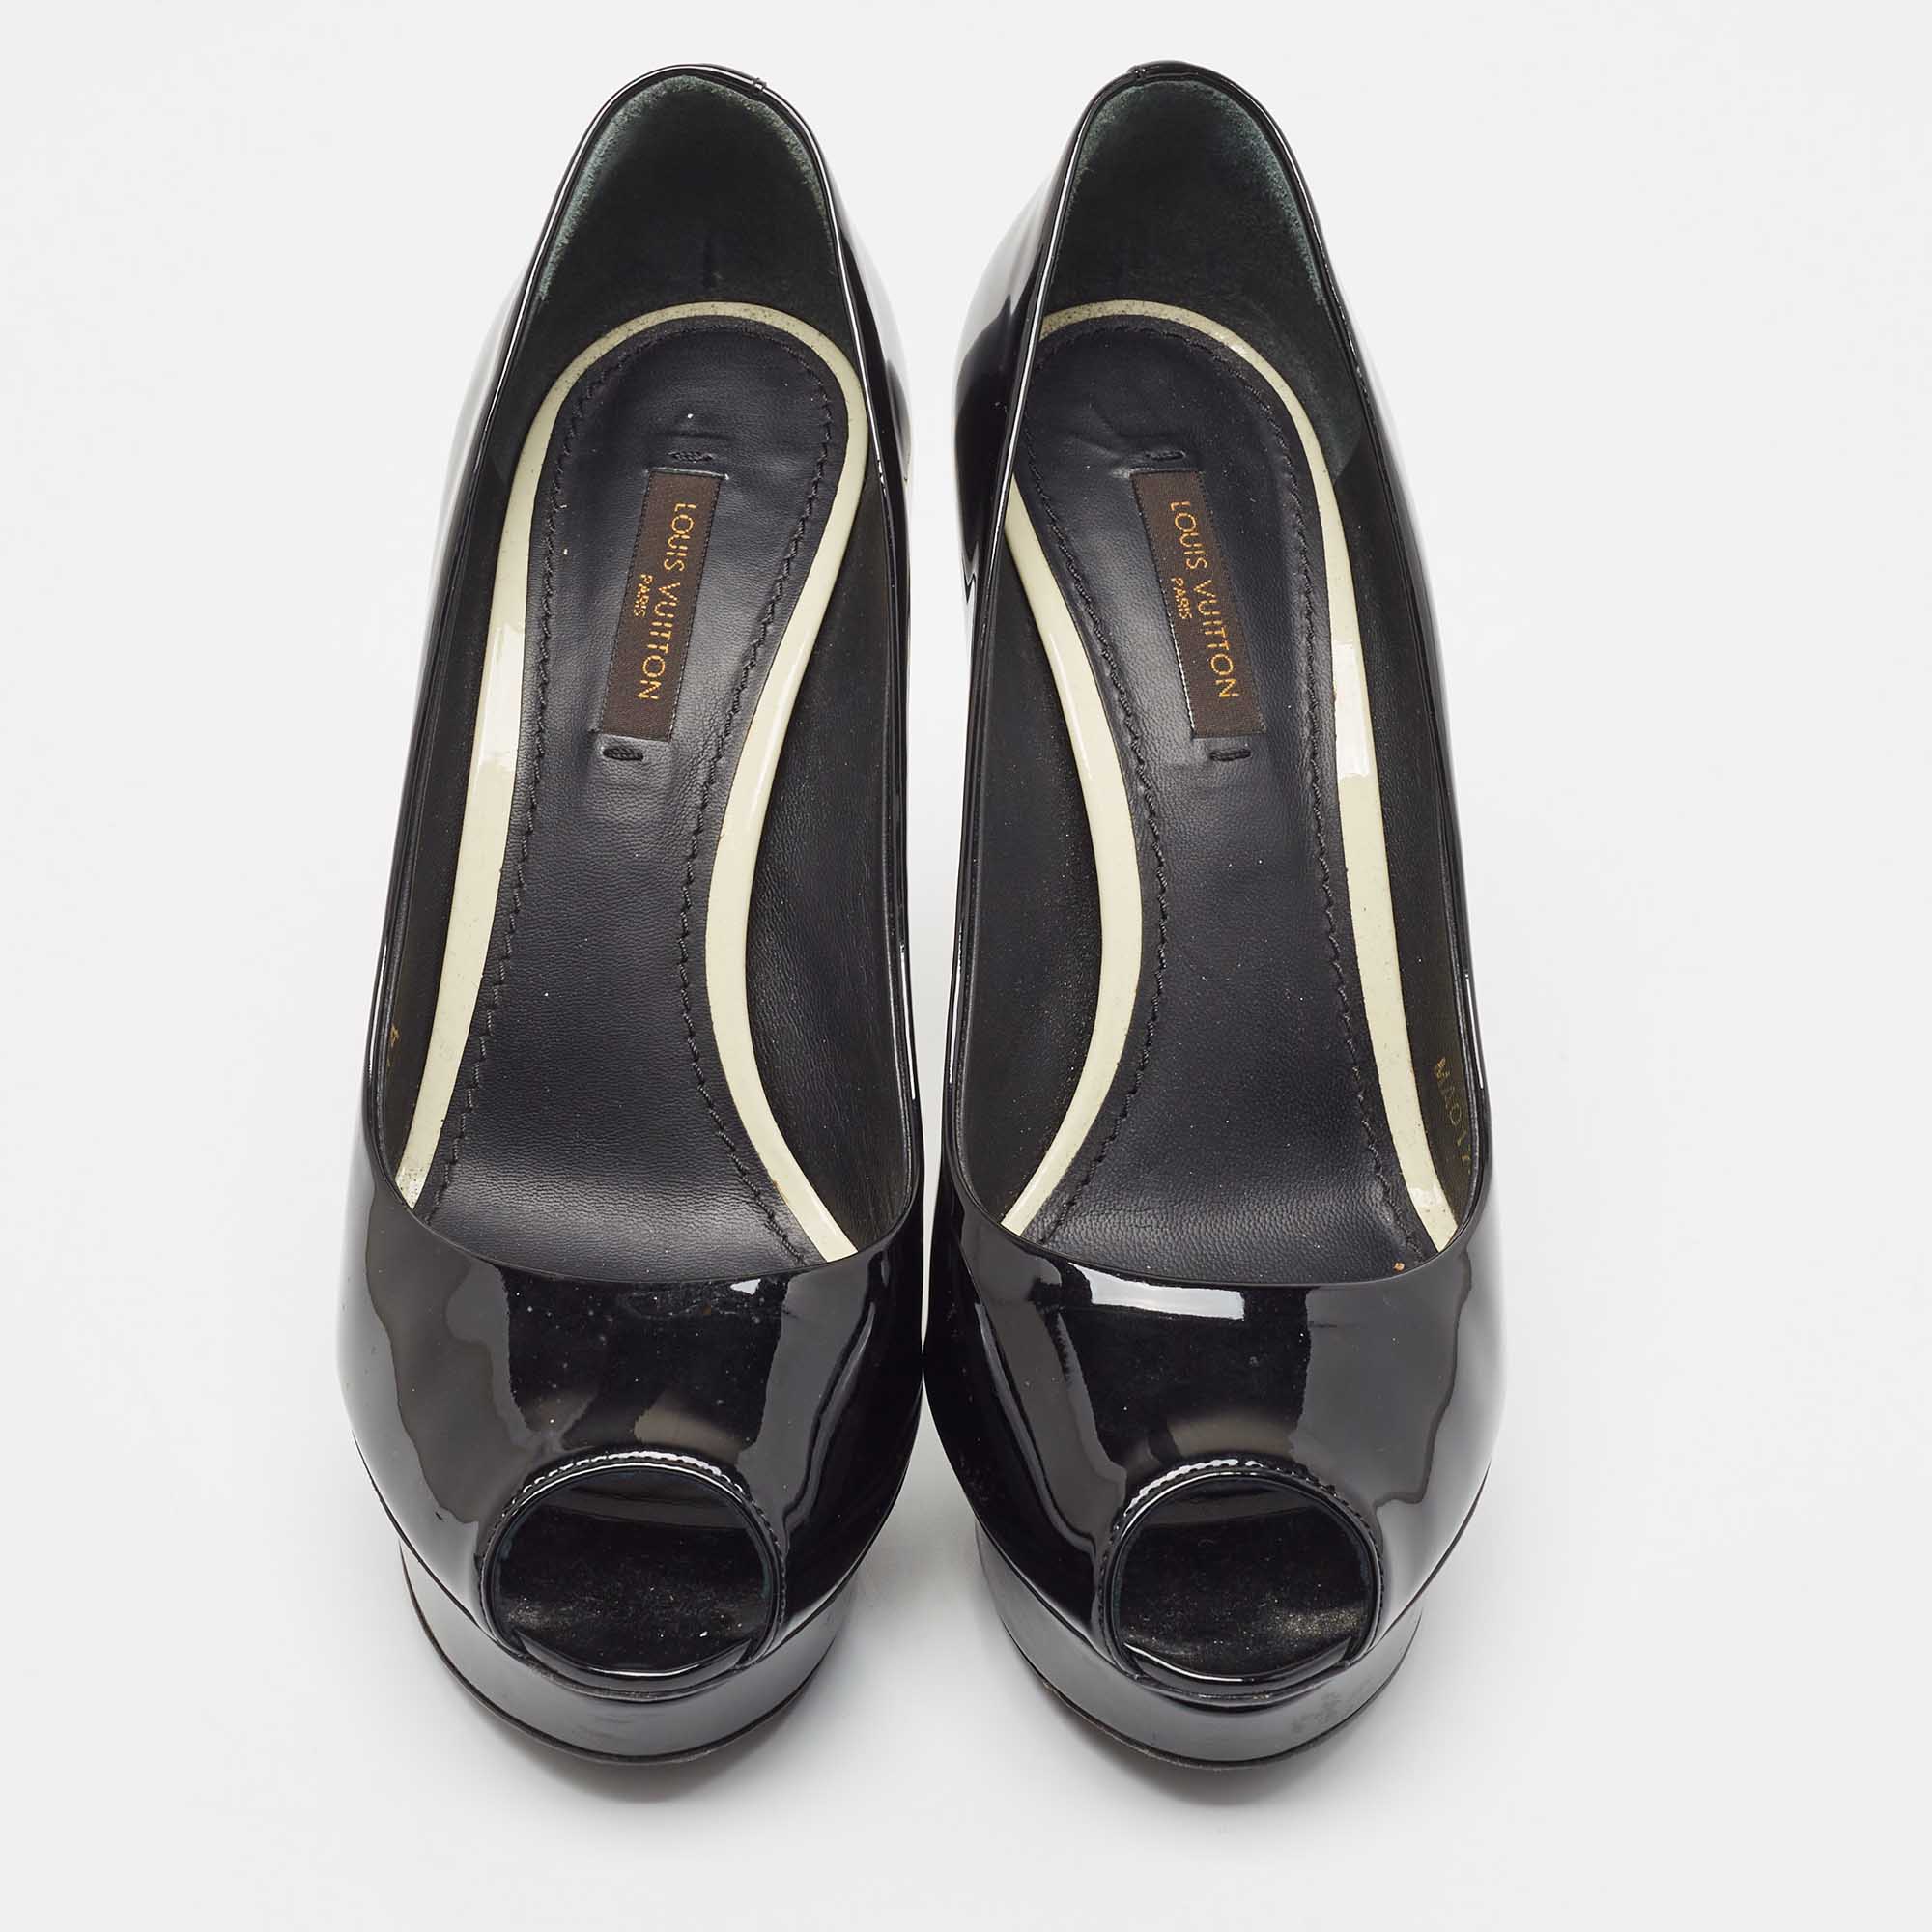 Louis Vuitton Black Patent Leather Peep Toe Platform Pumps Size 36.5